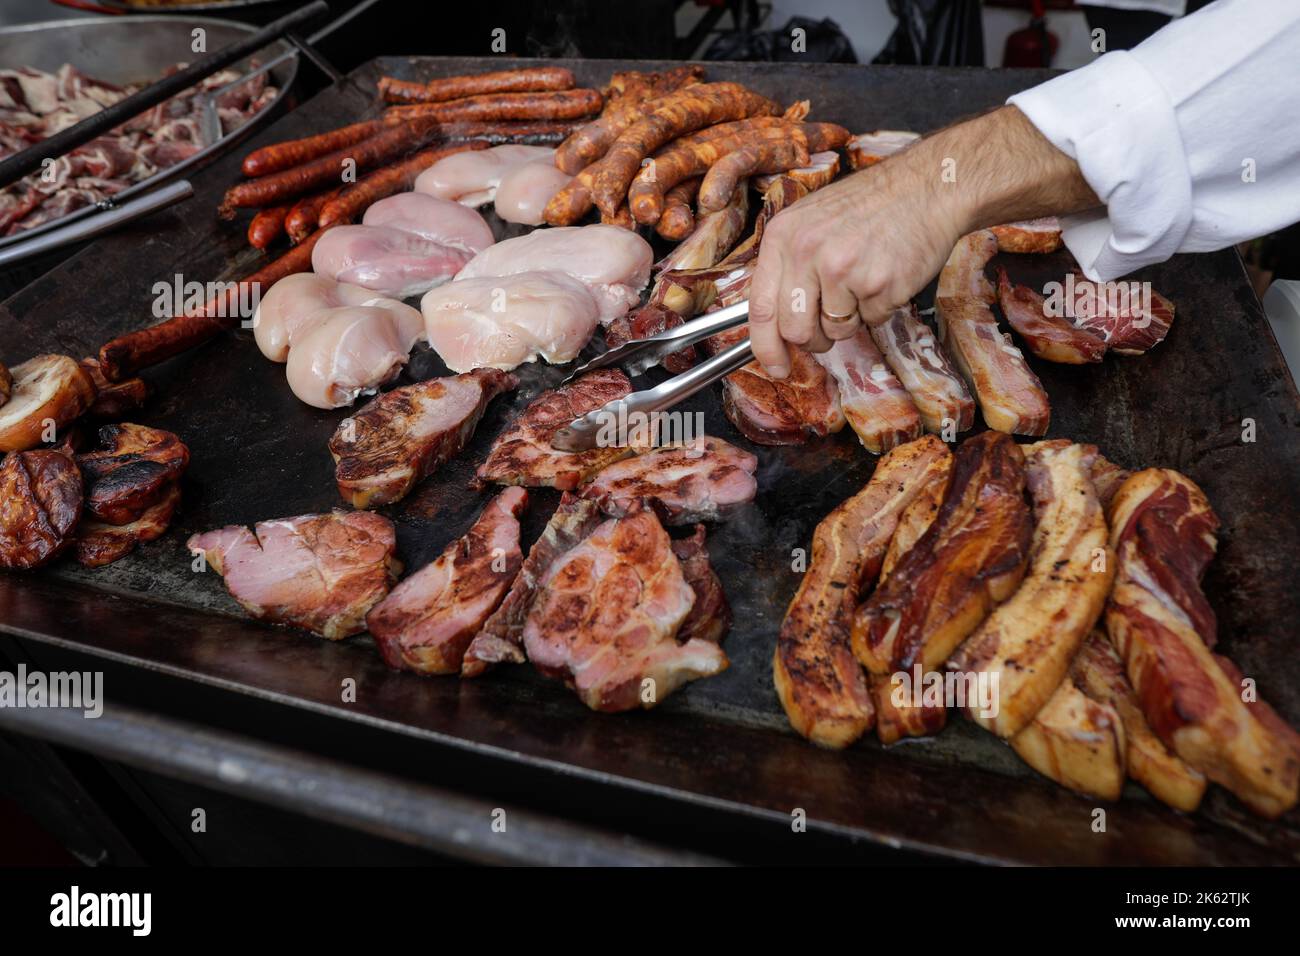 Profondità di campo bassa (fuoco selettivo) dettagli con un uomo grigliare vari tipi di carne (maiale, pollo, salsicce) su una piastra riscaldante in metallo. Foto Stock